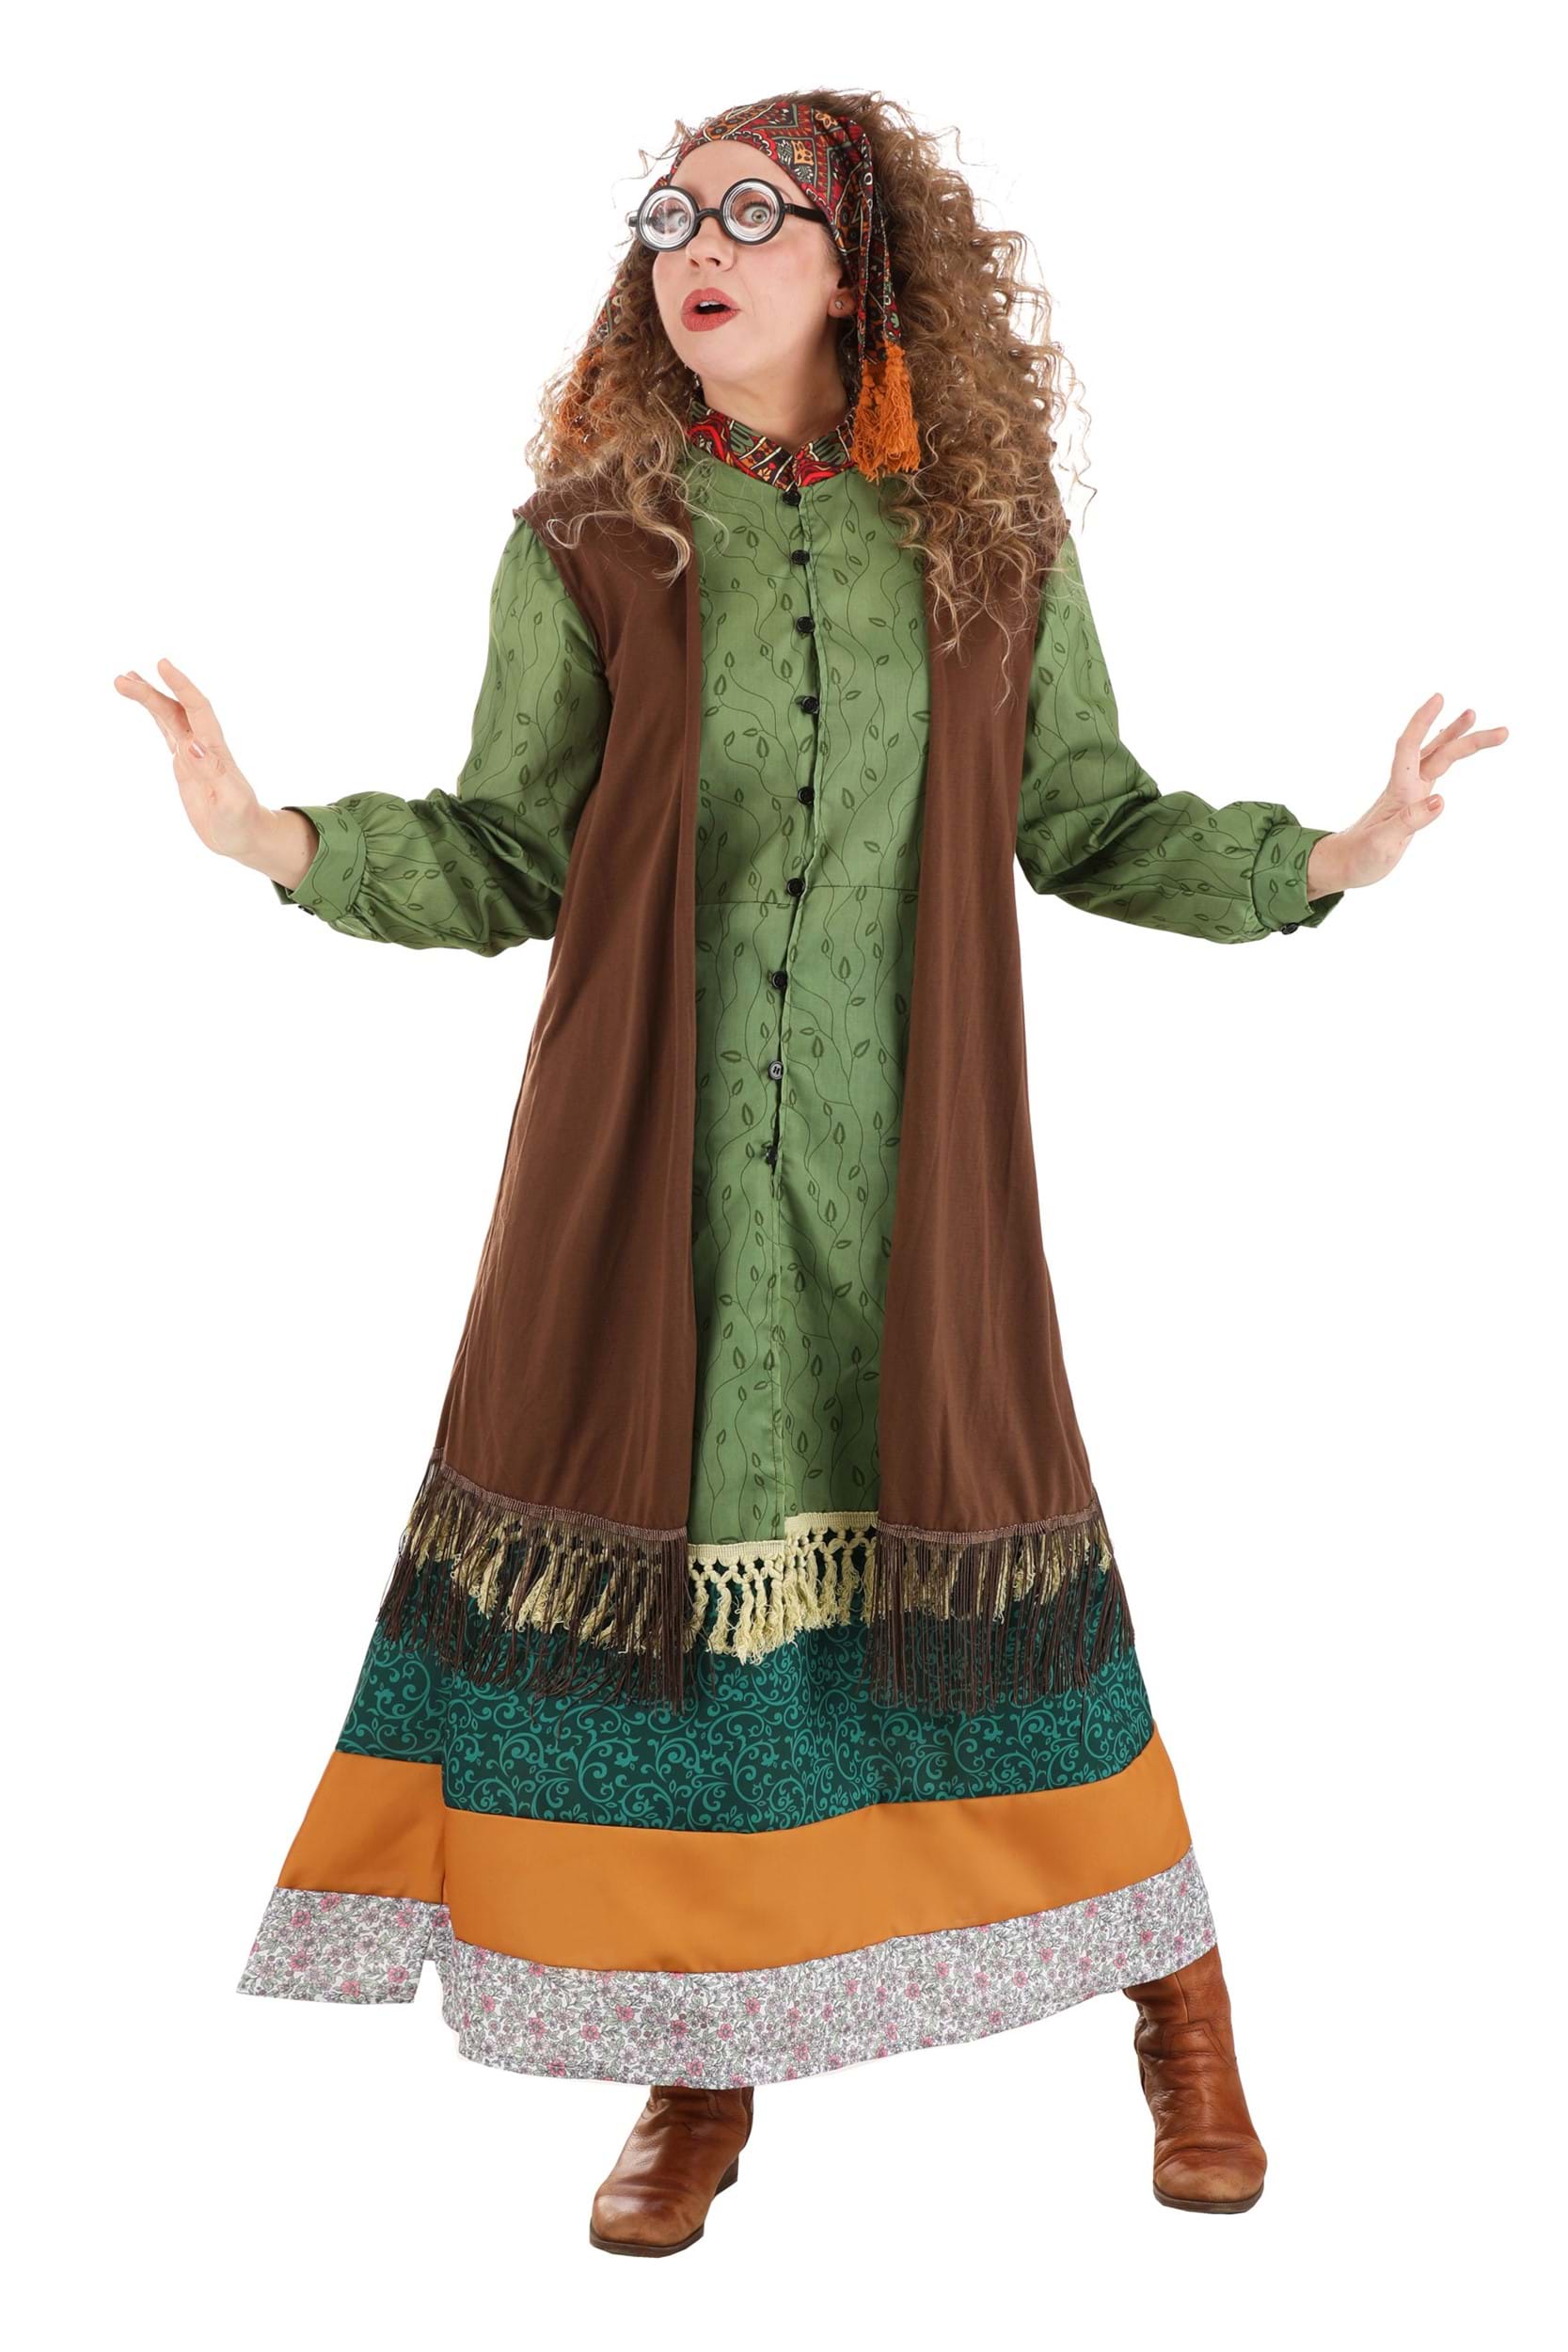 Image of Harry Potter Deluxe Plus Size Women's Professor Trelawney Costume ID JLJLF1060PL-2X